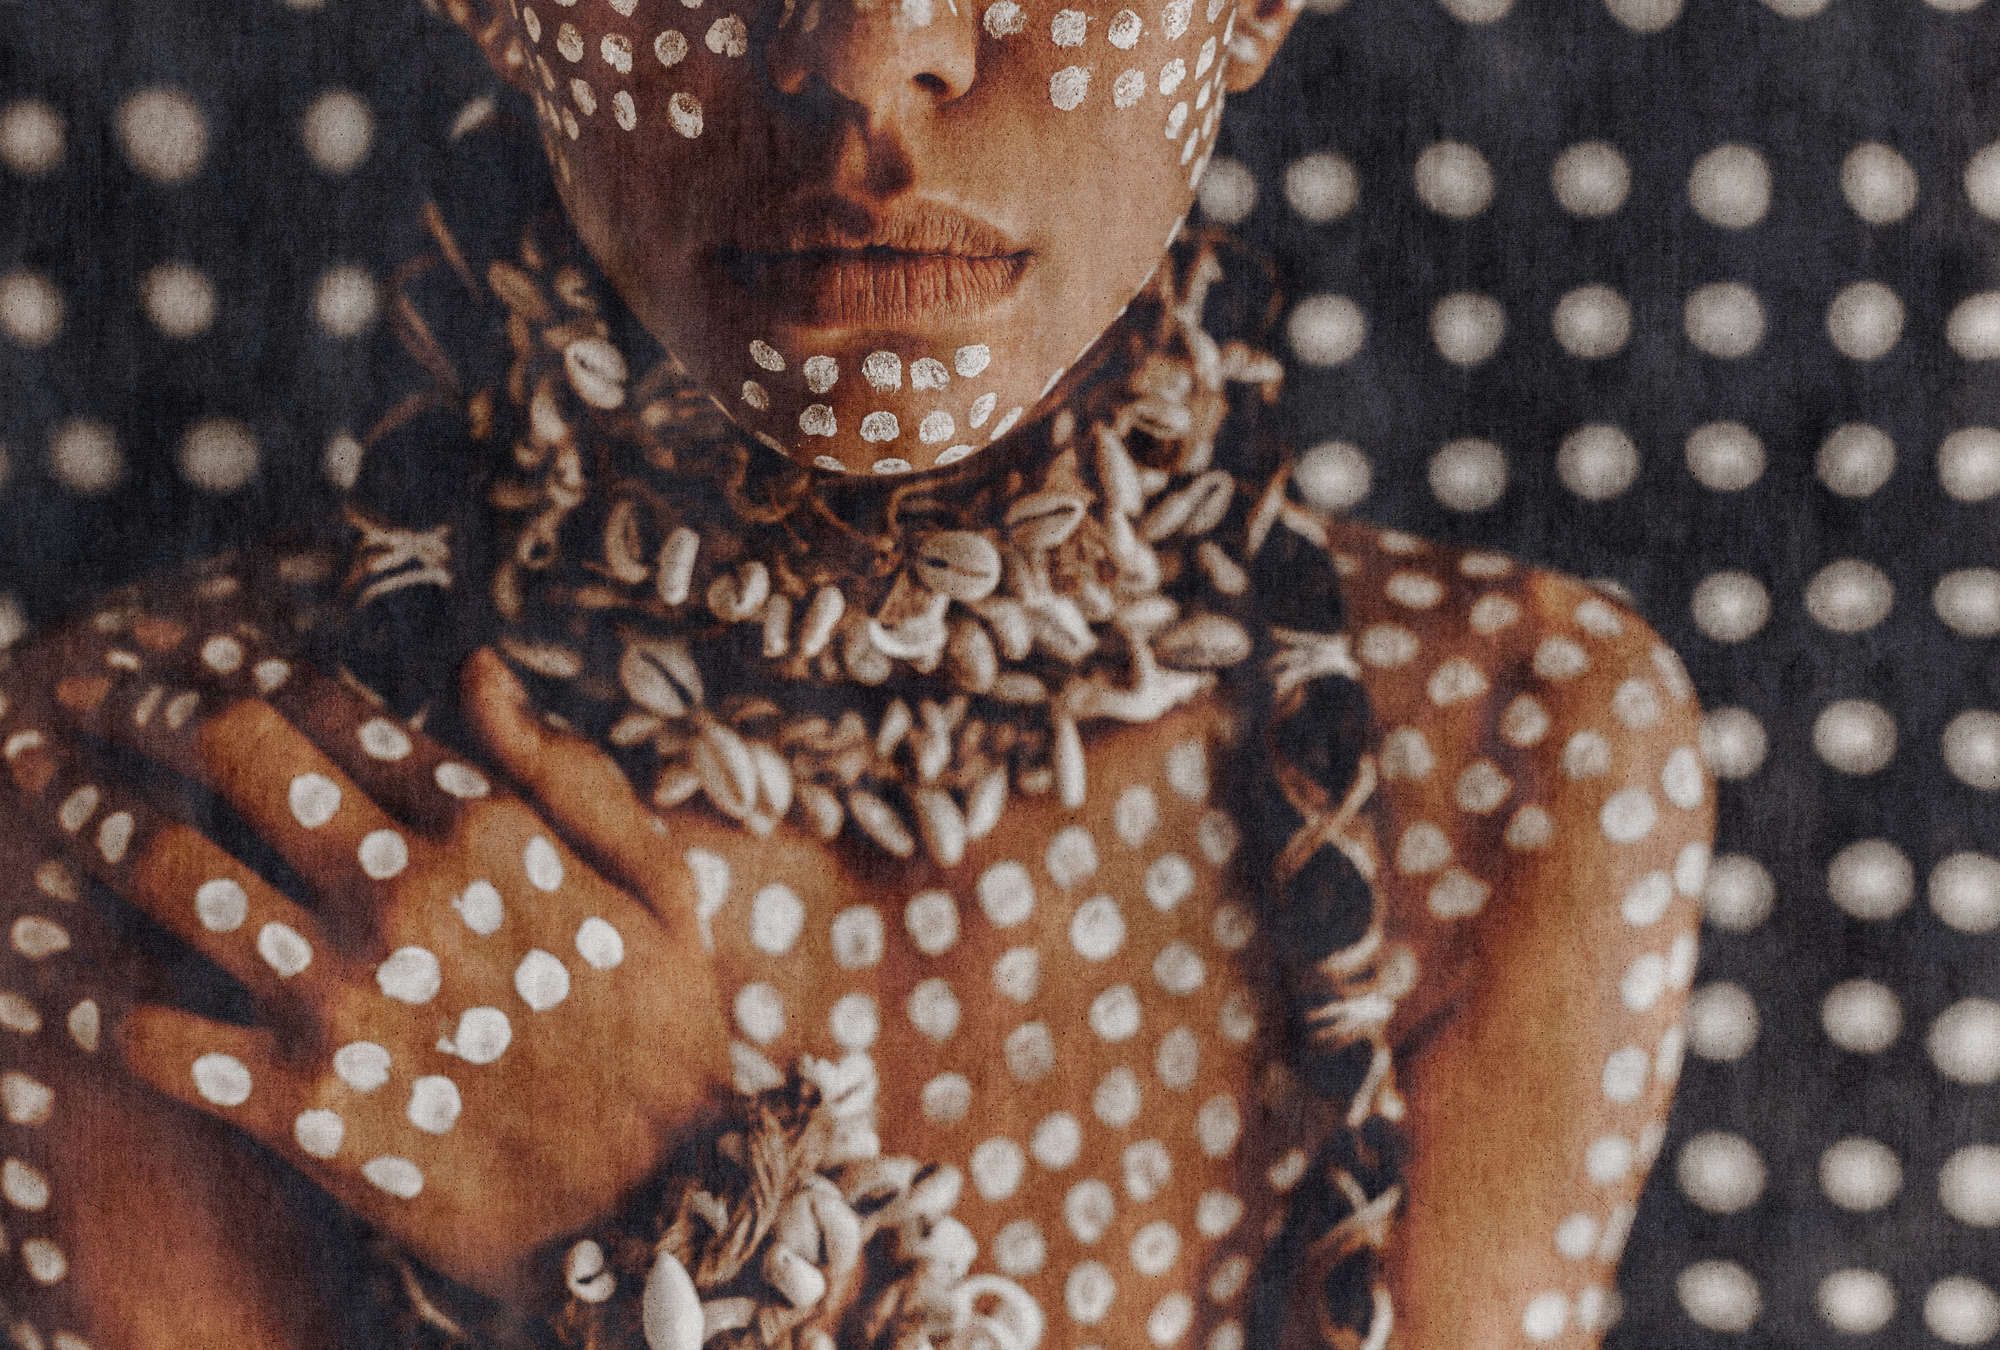             Fotomurali »alani« - donna africana con pittura del corpo, struttura ad arazzo sullo sfondo - tessuto non tessuto opaco e liscio
        